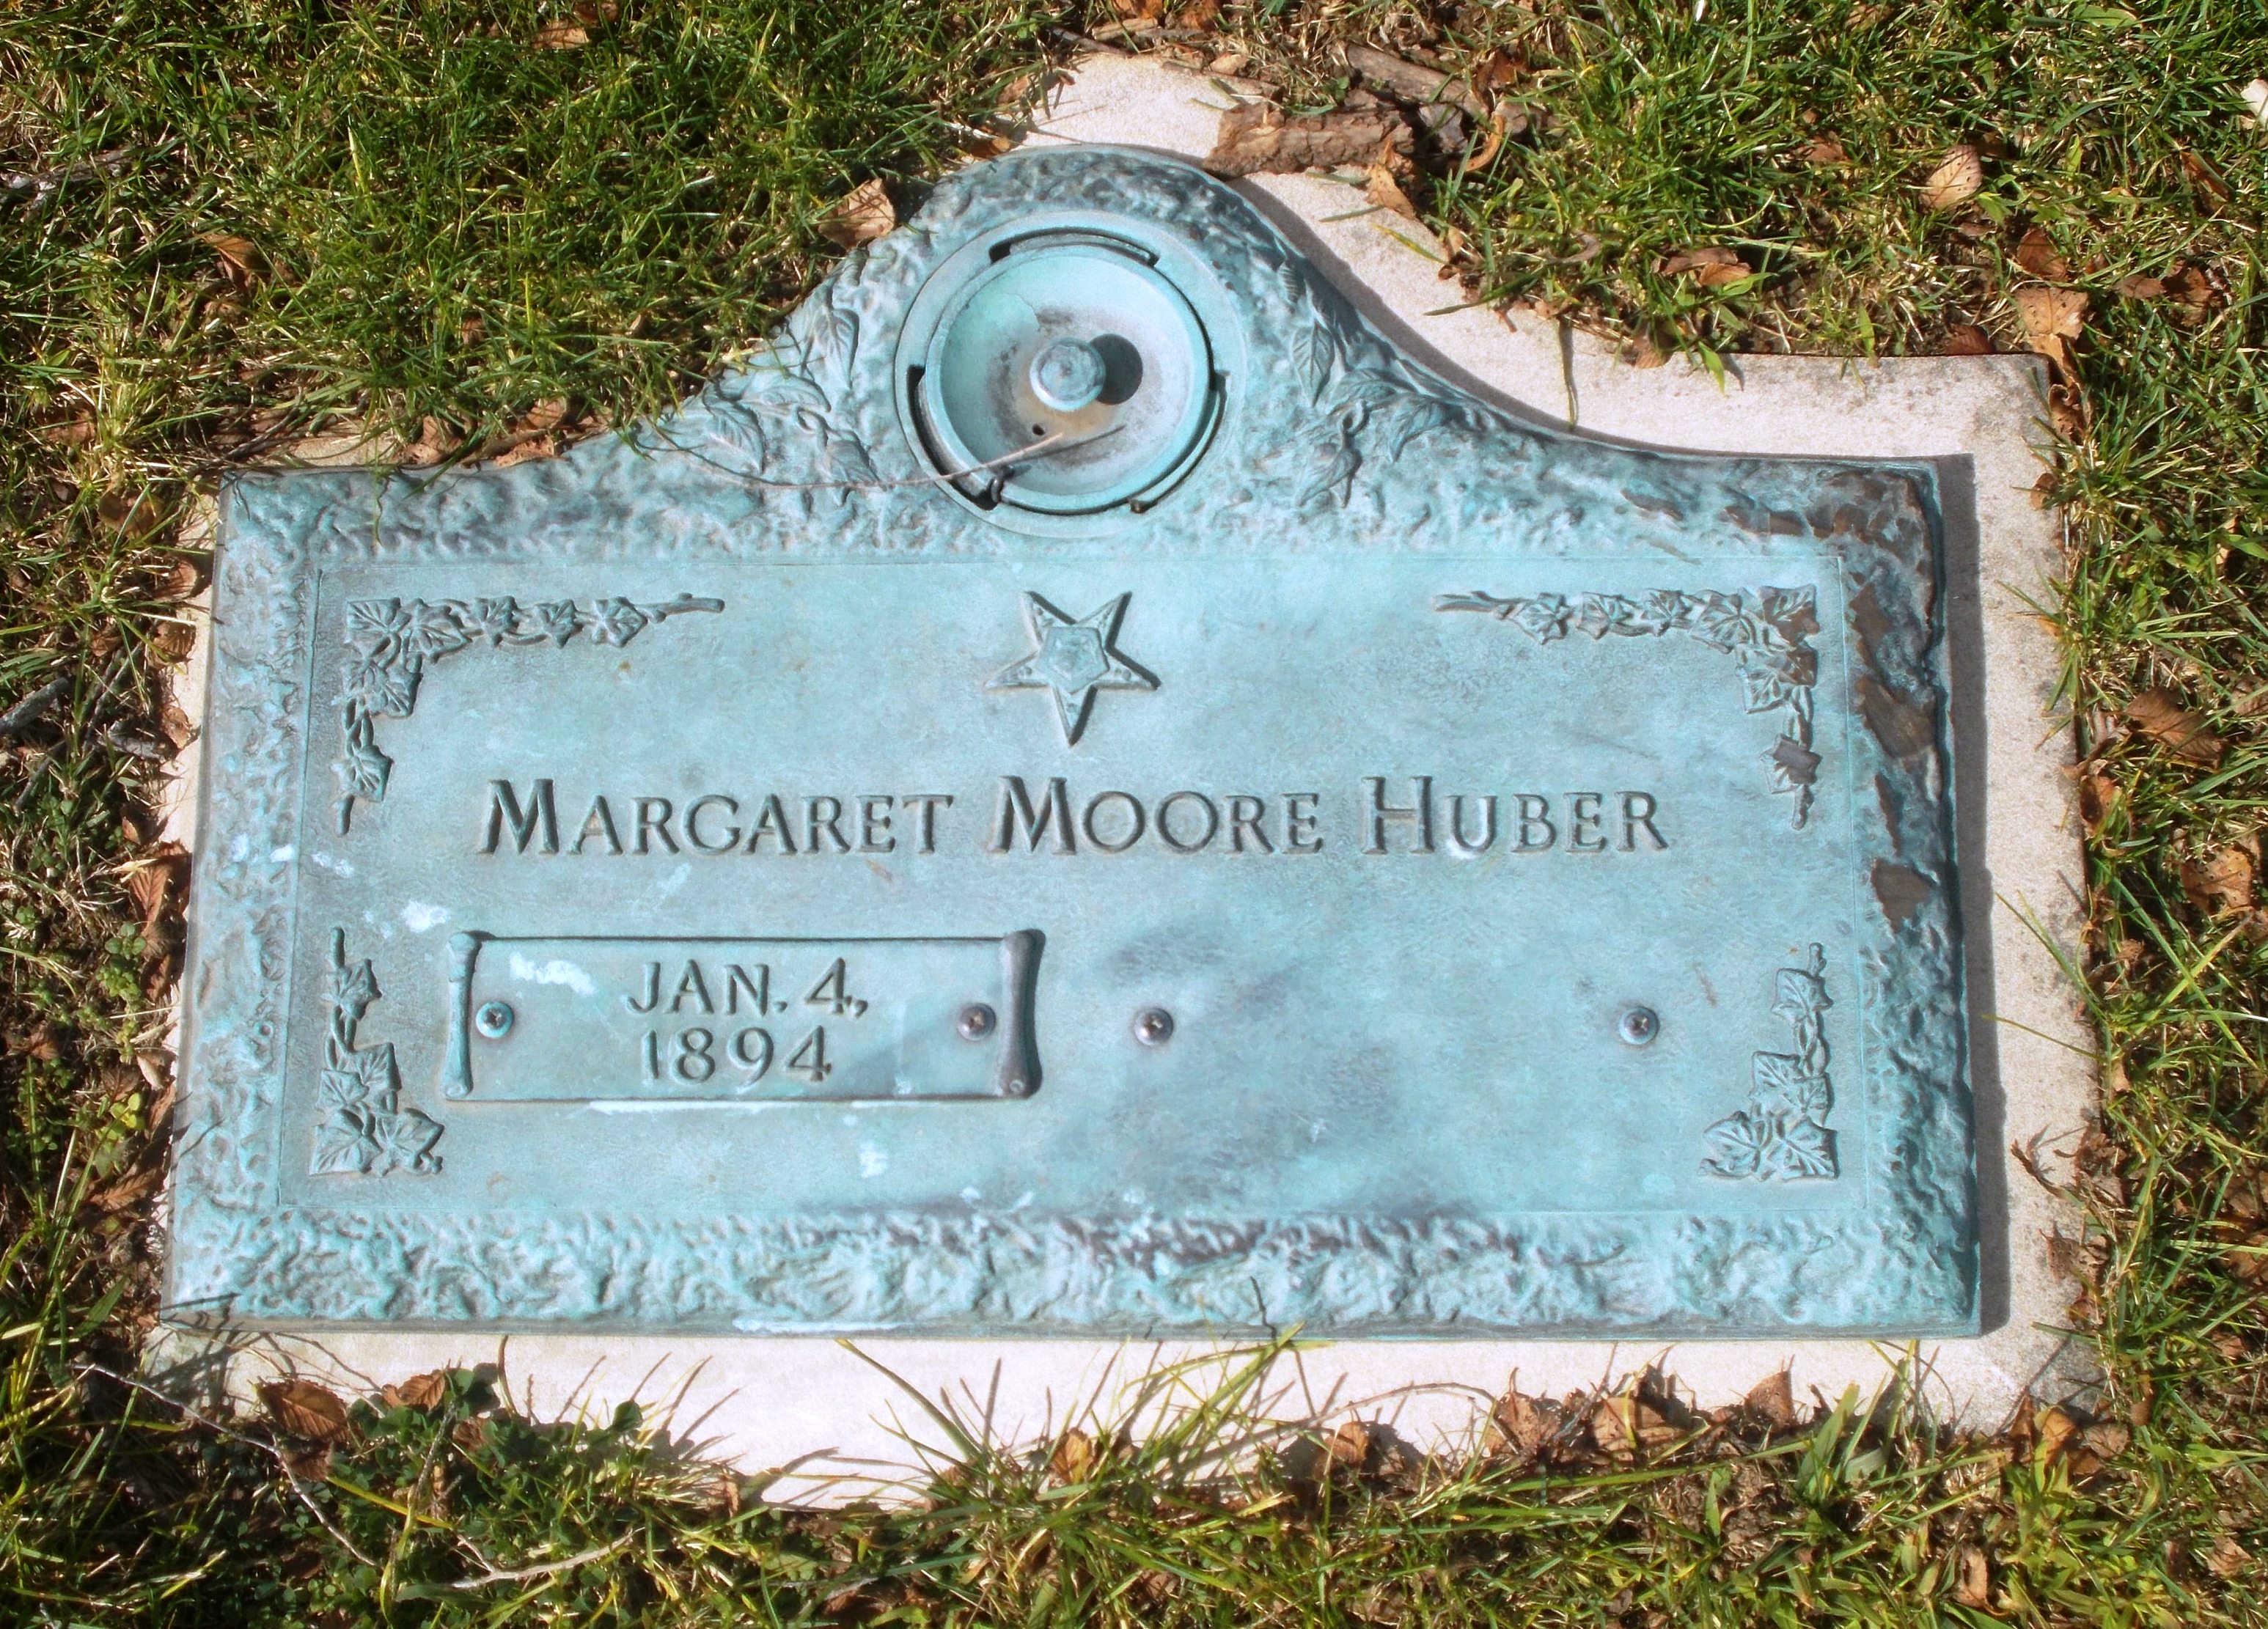 Margaret Moore Huber